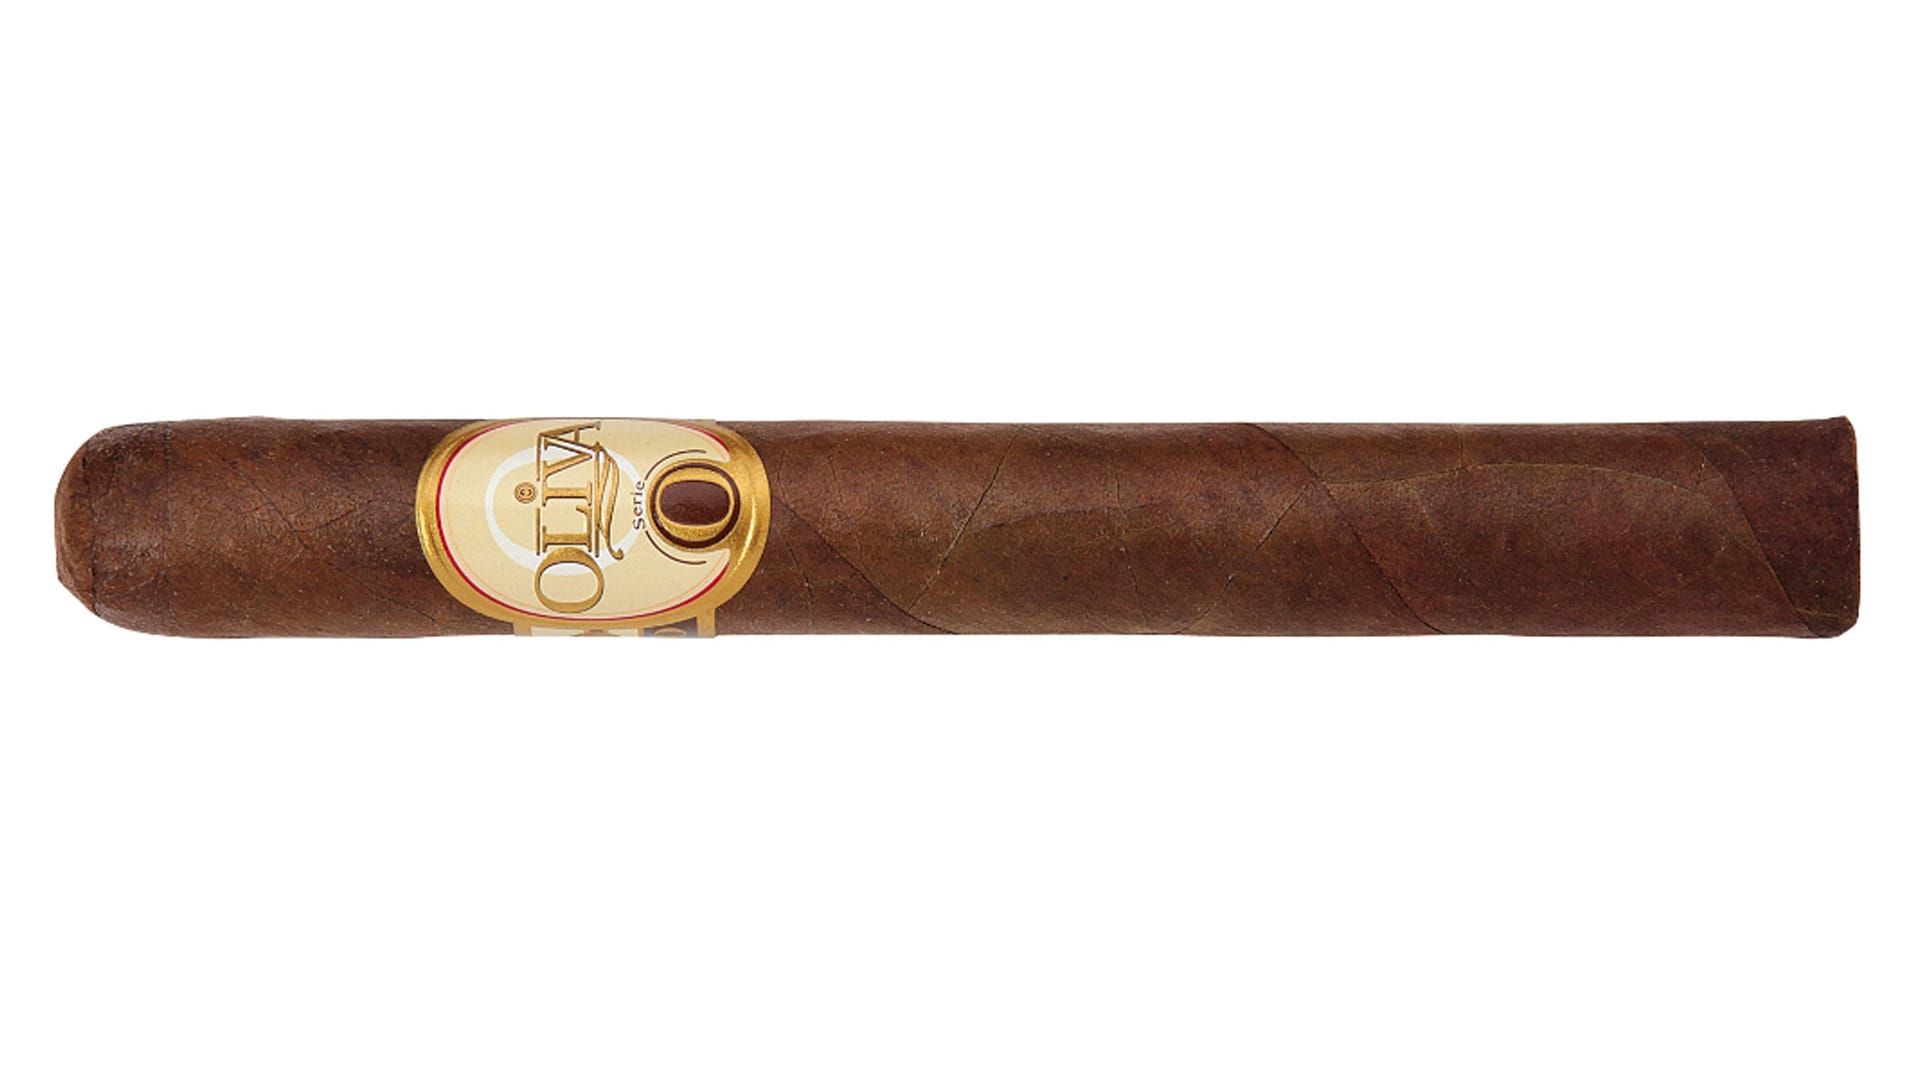 Die Oliva Serie O Classic Robusto aus Nicaragua für 6,60 Euro bietet ebenso feinen, ausgewogenen Tabakgenuss für Zigarrenanfänger.